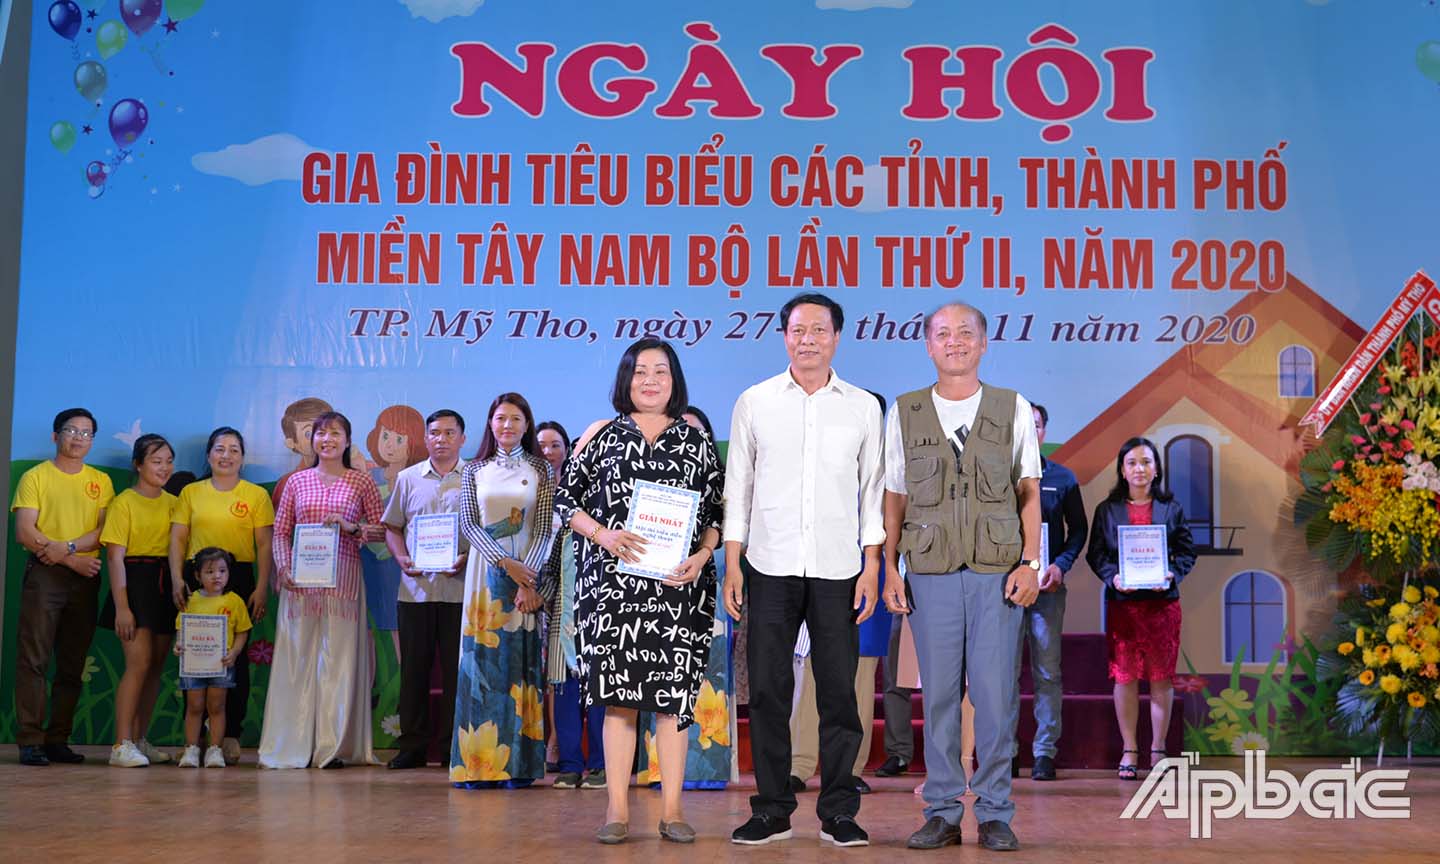 Đồng chí Nguyễn Kiều Linh trao giấy chứng nhận cho Gia đình của tỉnh Kiên Giang đạt giải Nhất phần thi Biểu diễn nghệ thuật.